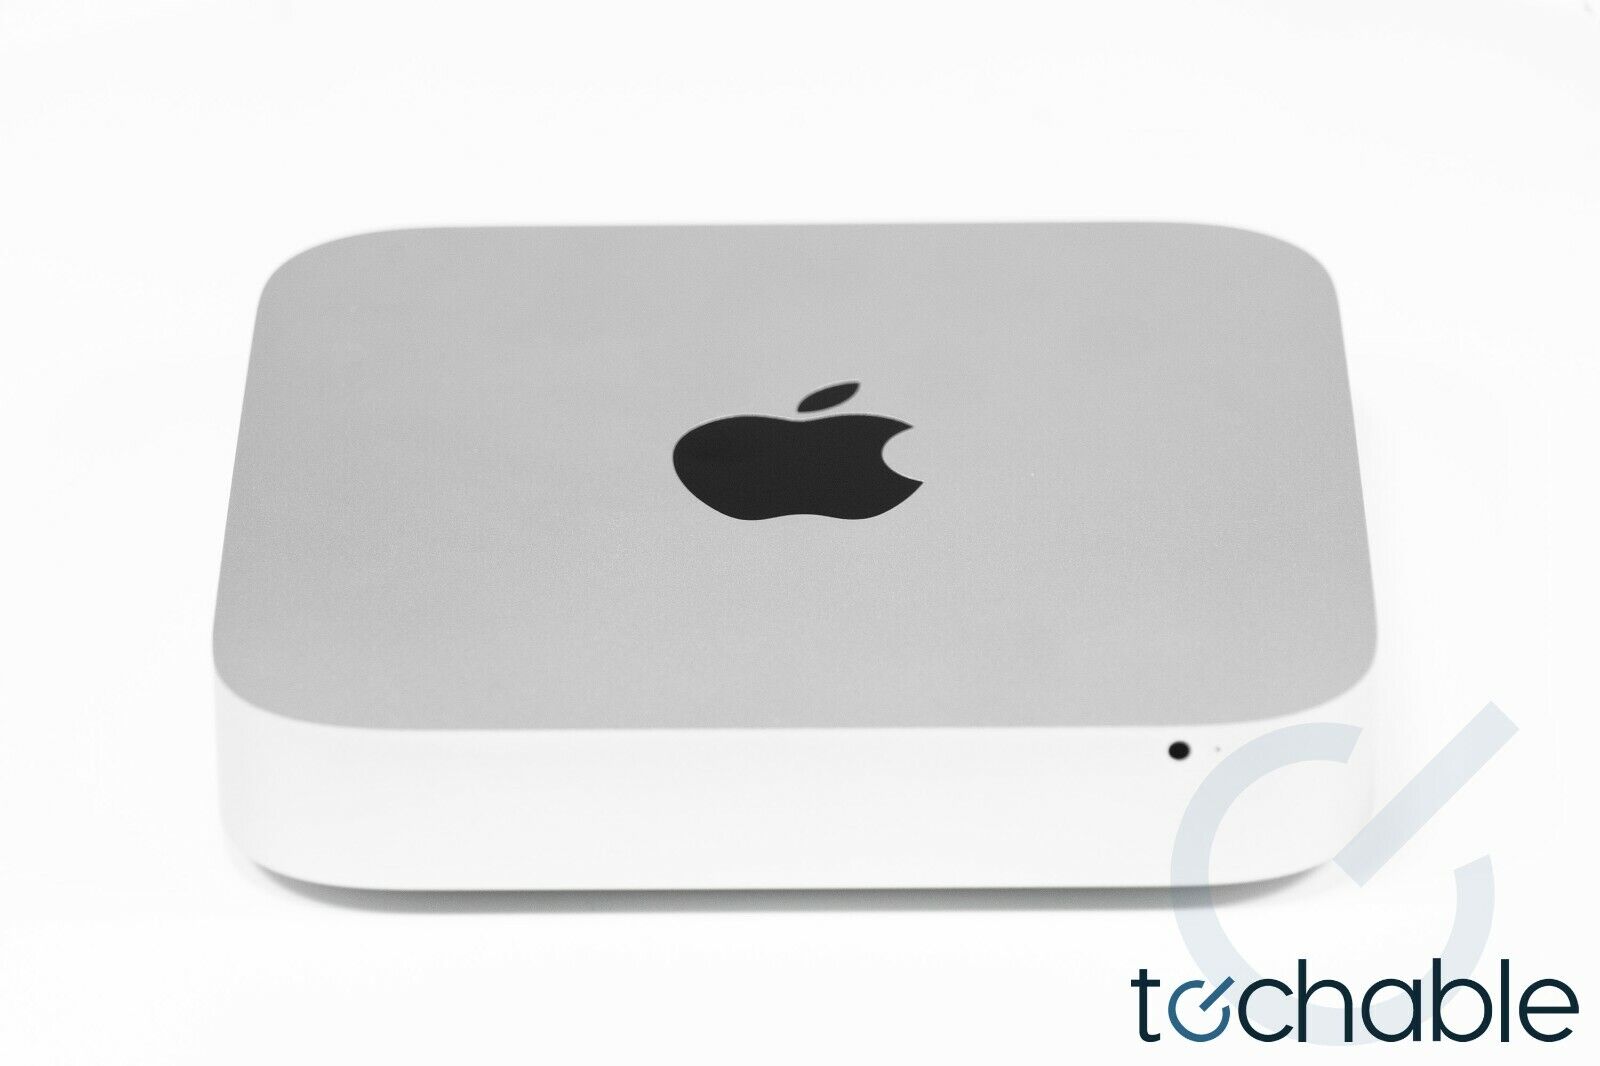 Apple Mac Mini Core i5 Late 2014 2.6GHz - 3.1GHz Turbo 8GB 1TB 2014 MGEN2LL/A